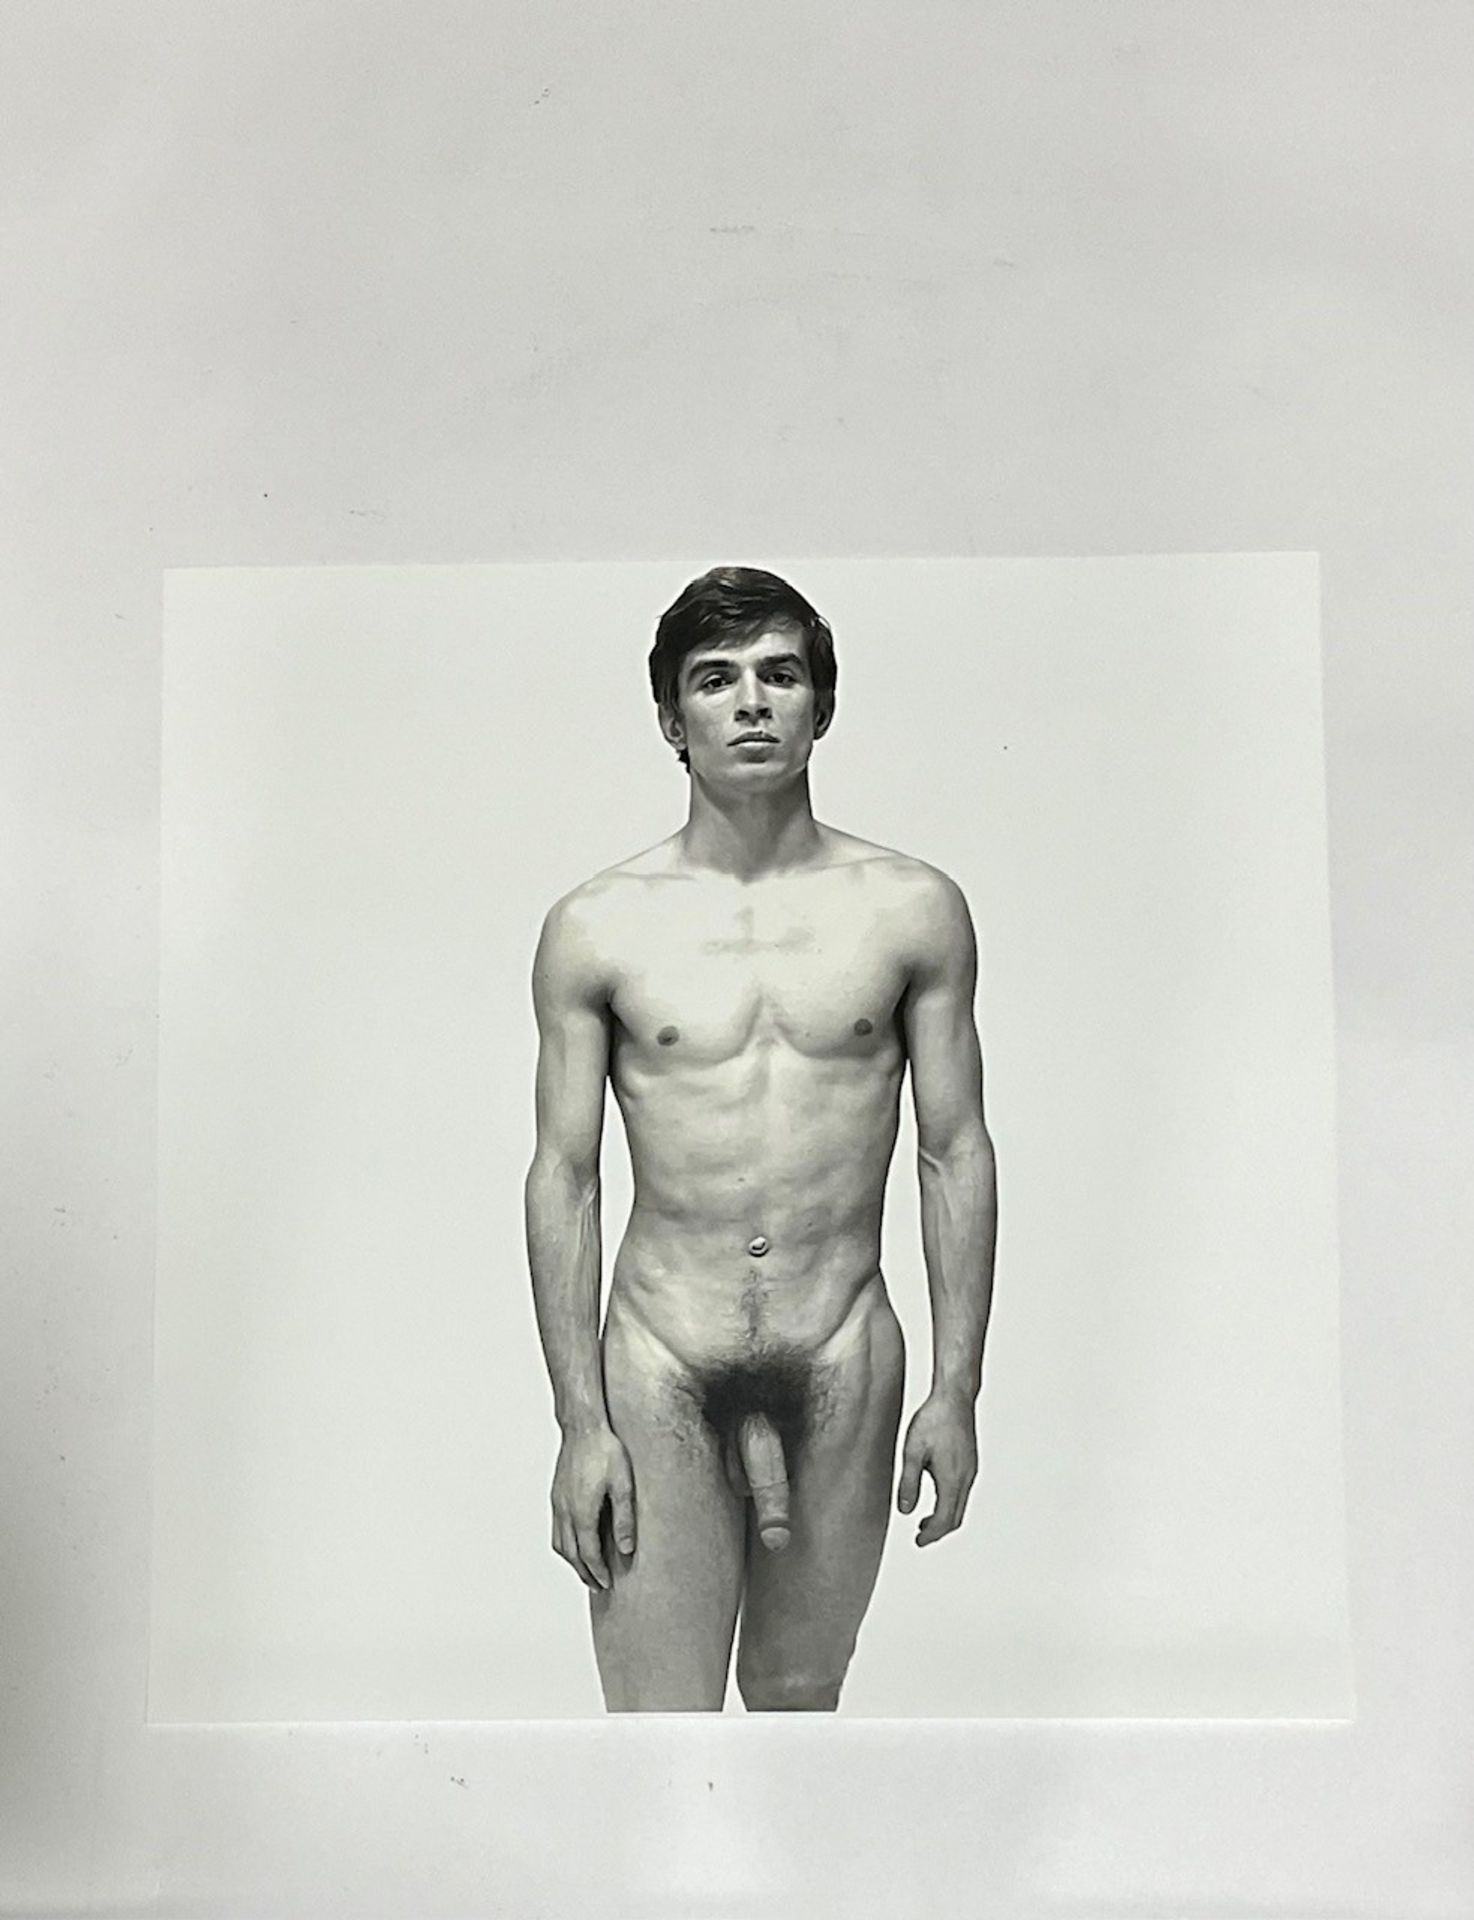 Richard Avedon "Rudolf Nureyev" Photo Print